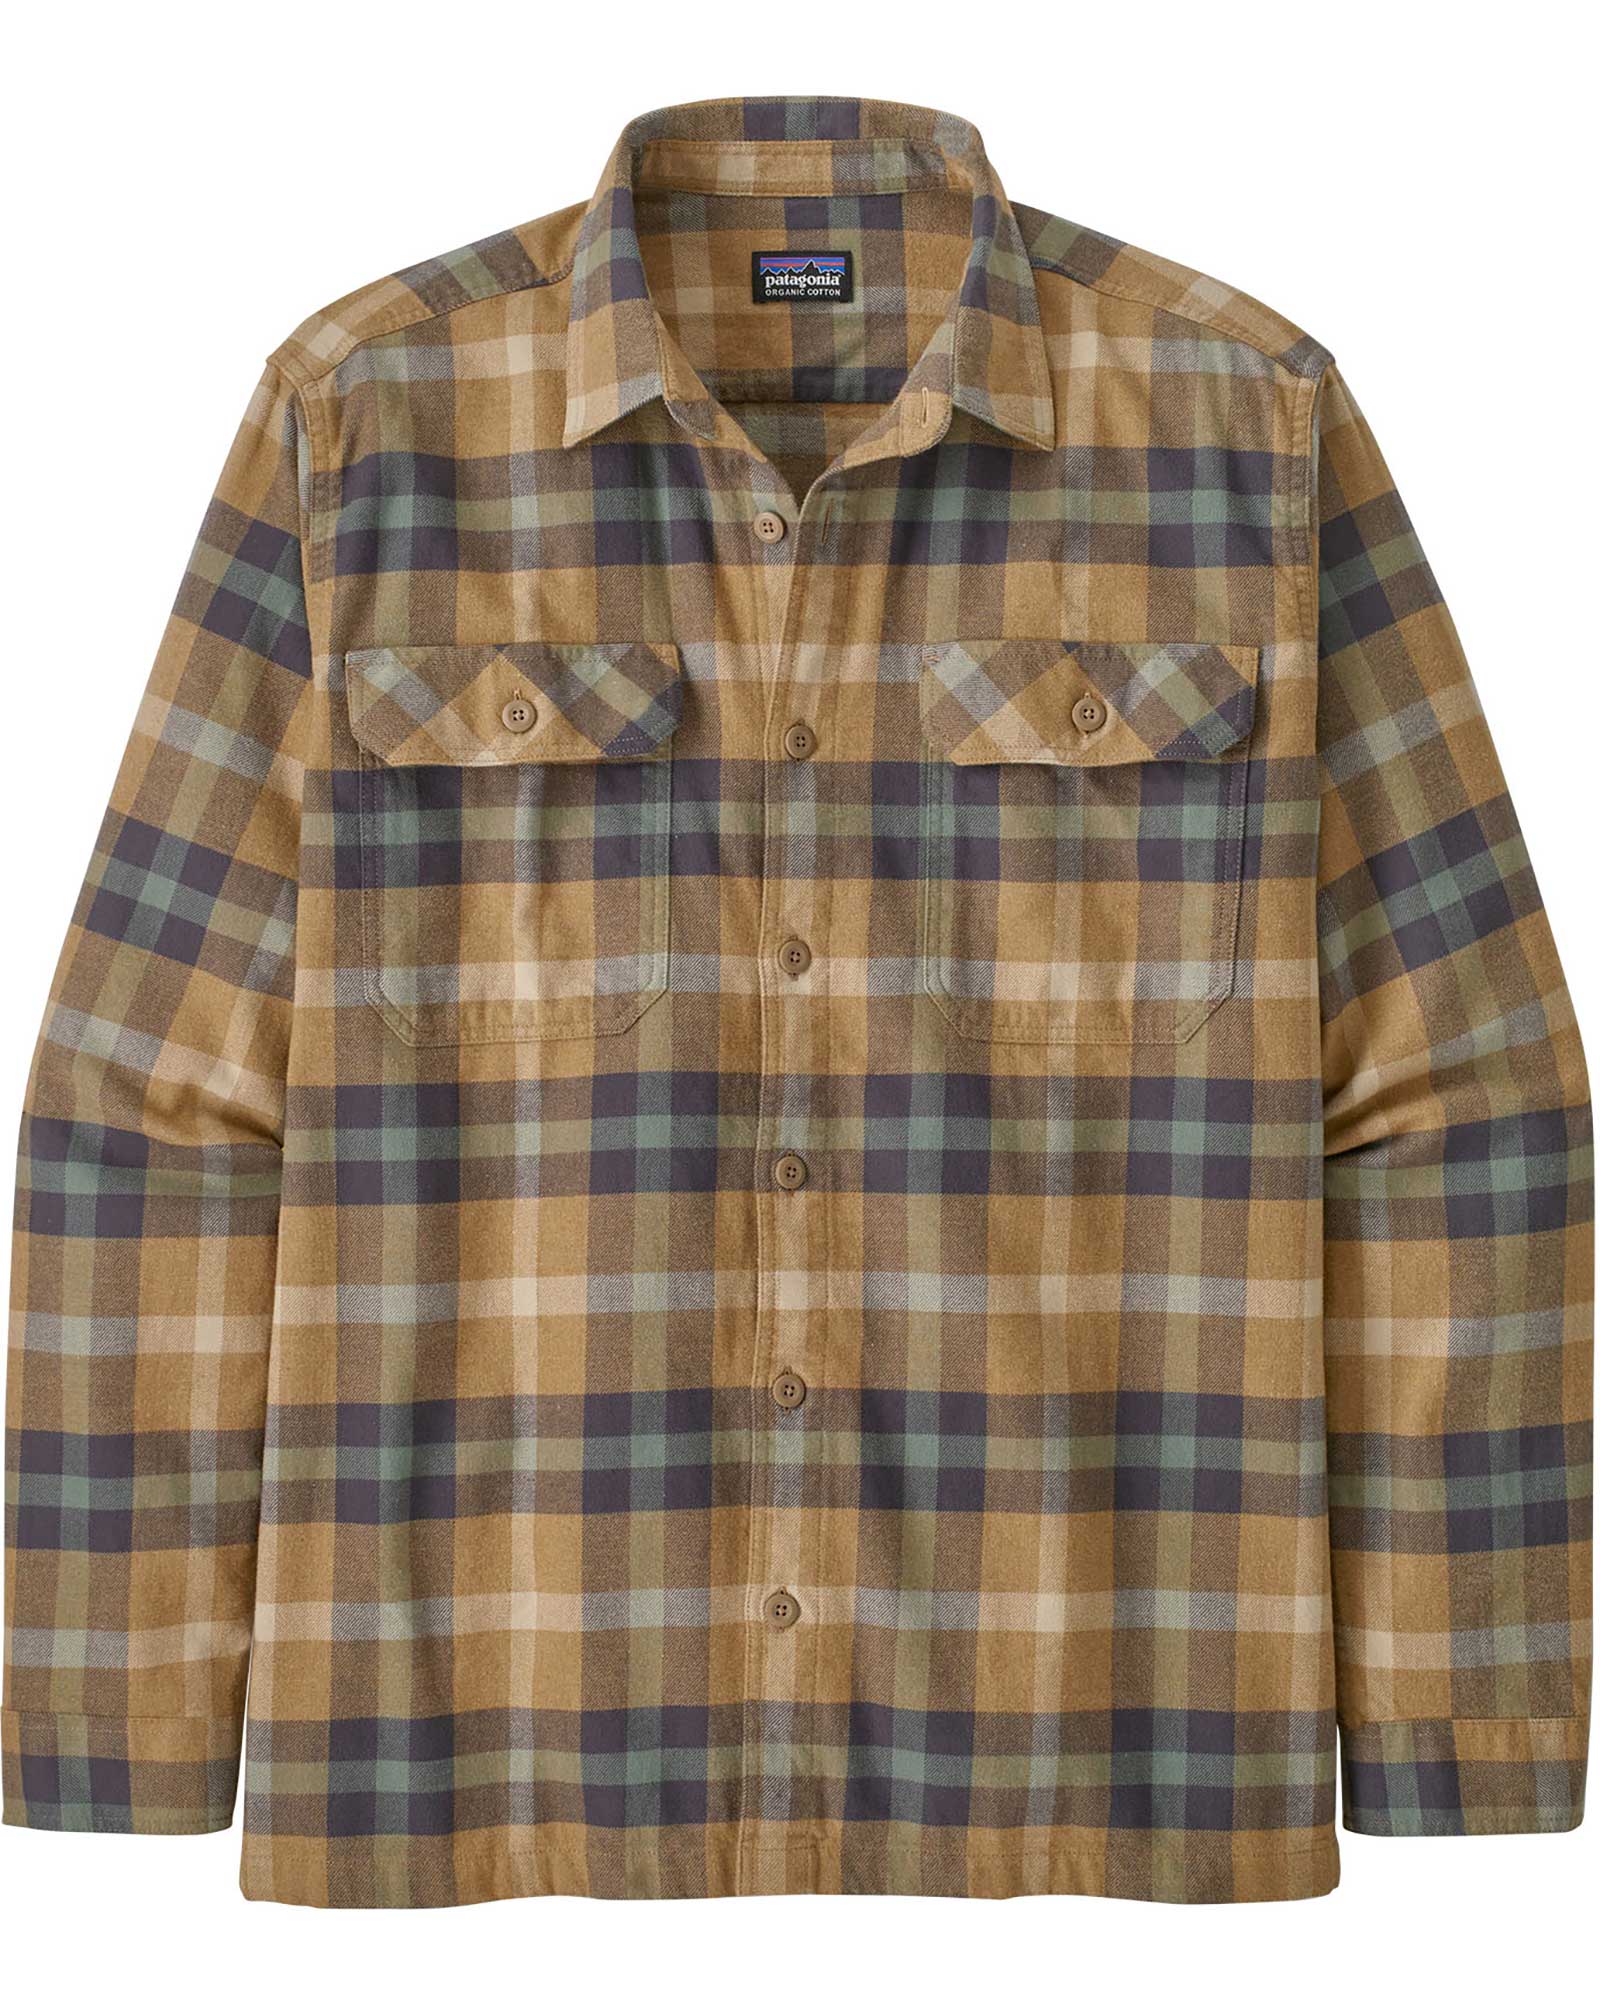 Patagonia Men’s Organic Long Sleeve Flannel Shirt - Mojave Khaki/Forage L